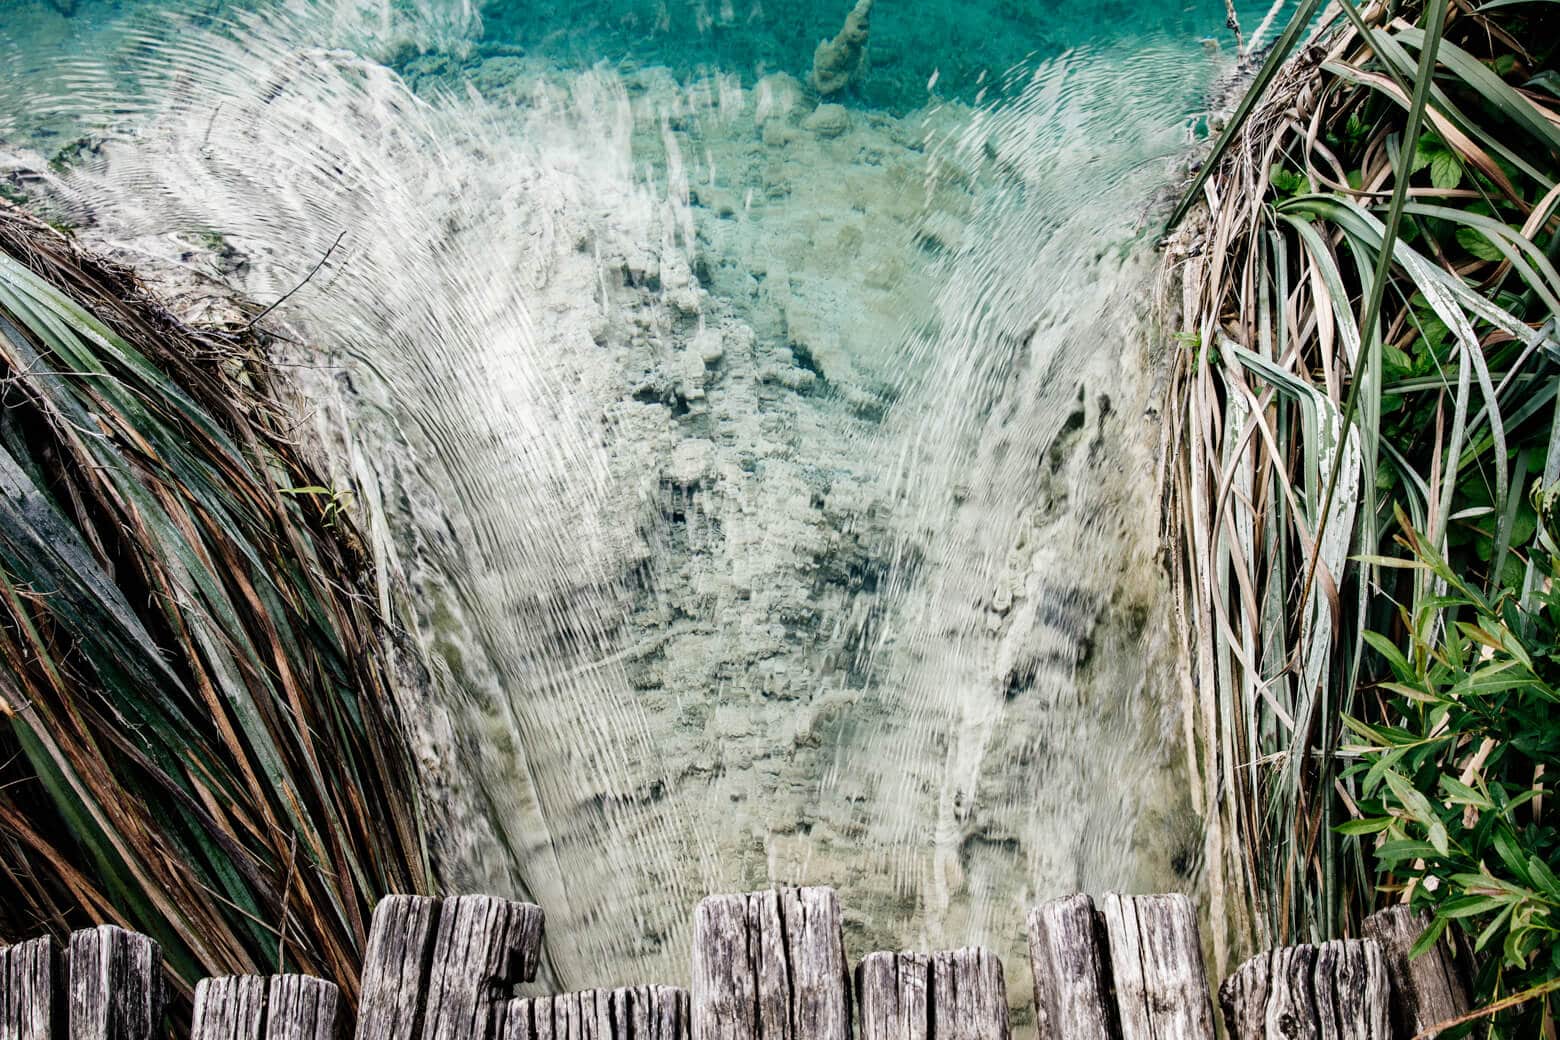 No Swimming at Plitvice Lakes